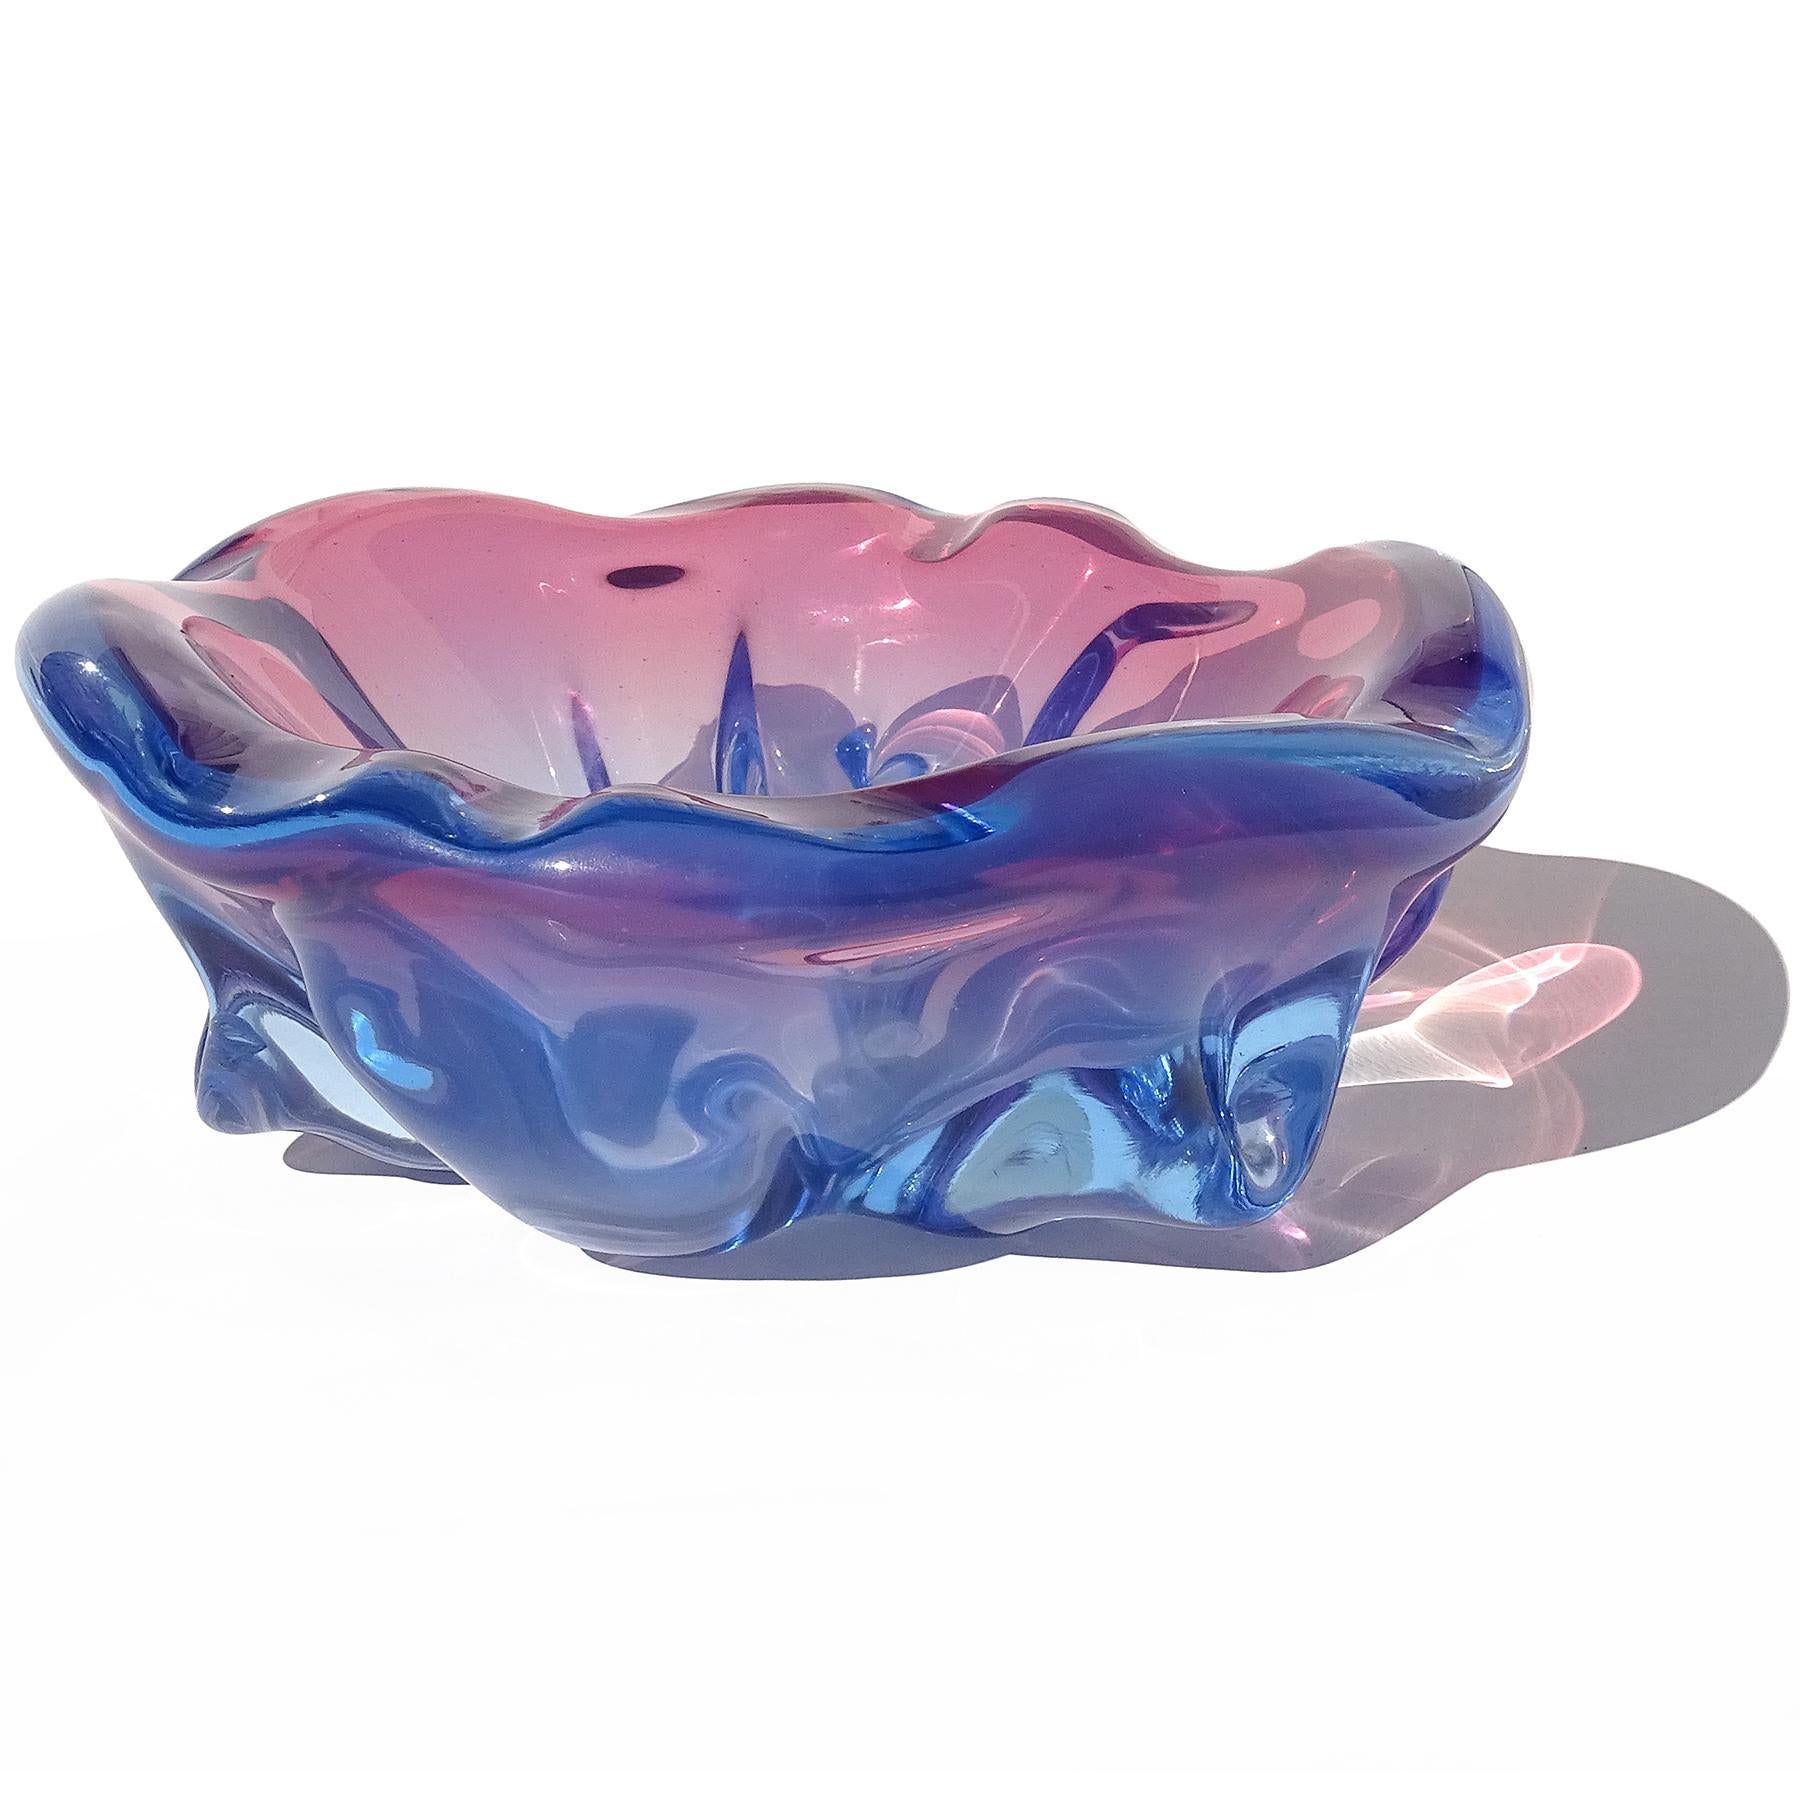 Schöne Vintage Murano mundgeblasen Sommerso Amethyst lila, rosa, blau italienische Kunst Glas skulpturale dekorative Schale. Dokumentiert für den Designer Alfredo Barbini, ca. 1950-1960. Die Schale hat einen geriffelten Rand mit skulpturalen